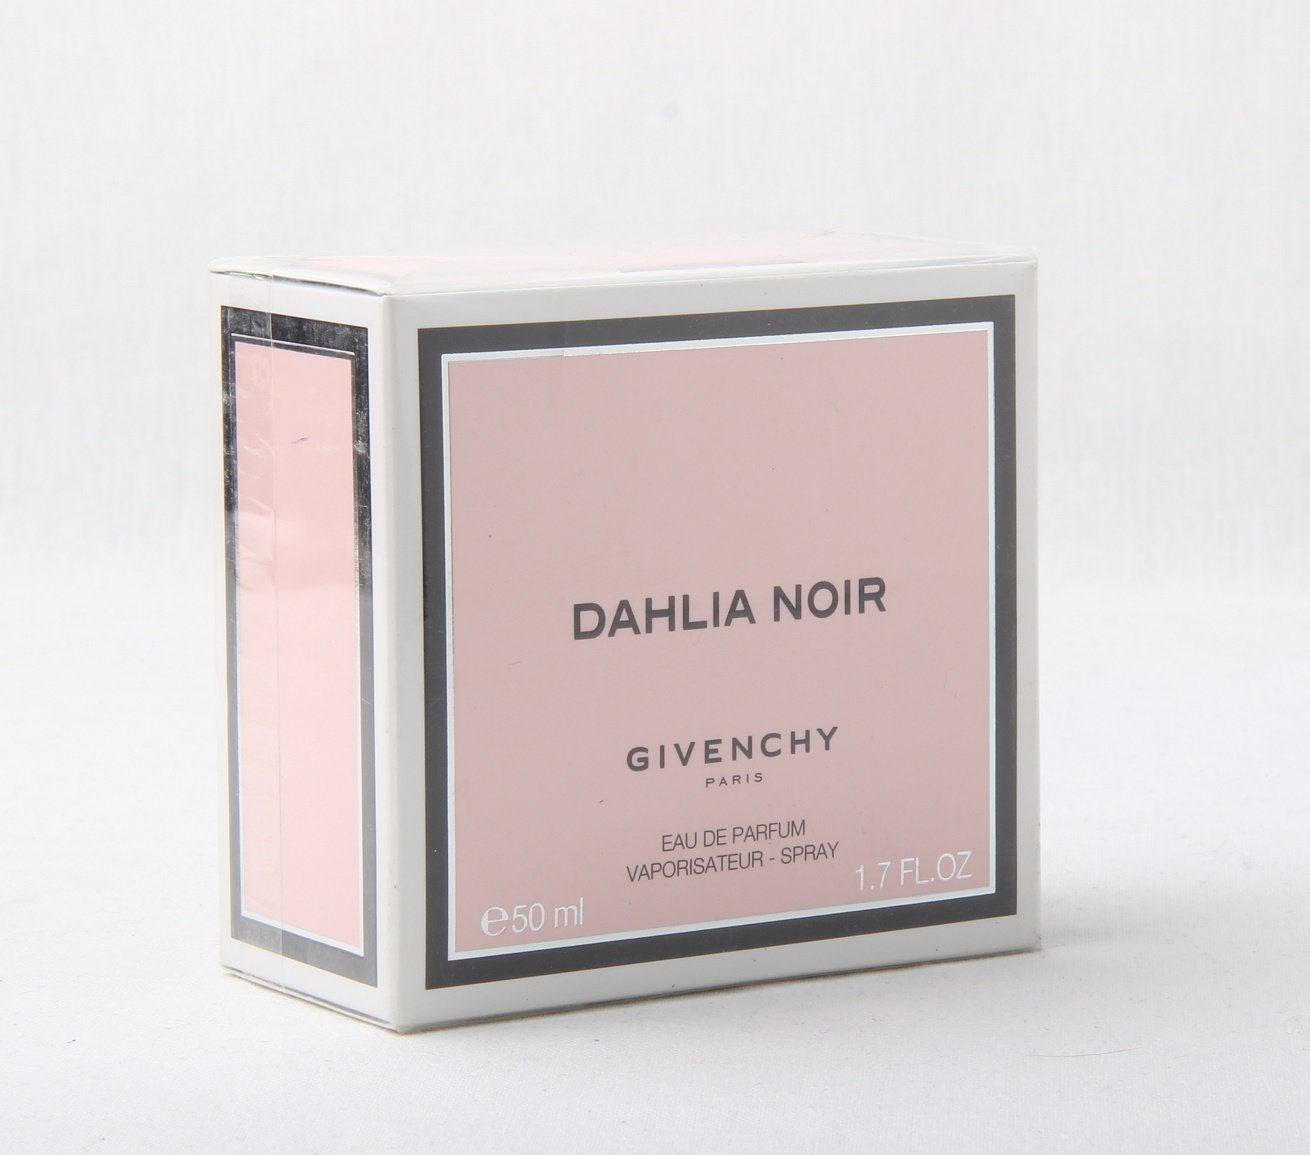 Parfum de Givenchy GIVENCHY Noir Parfum Dahlia 50ml Spray de Eau Eau